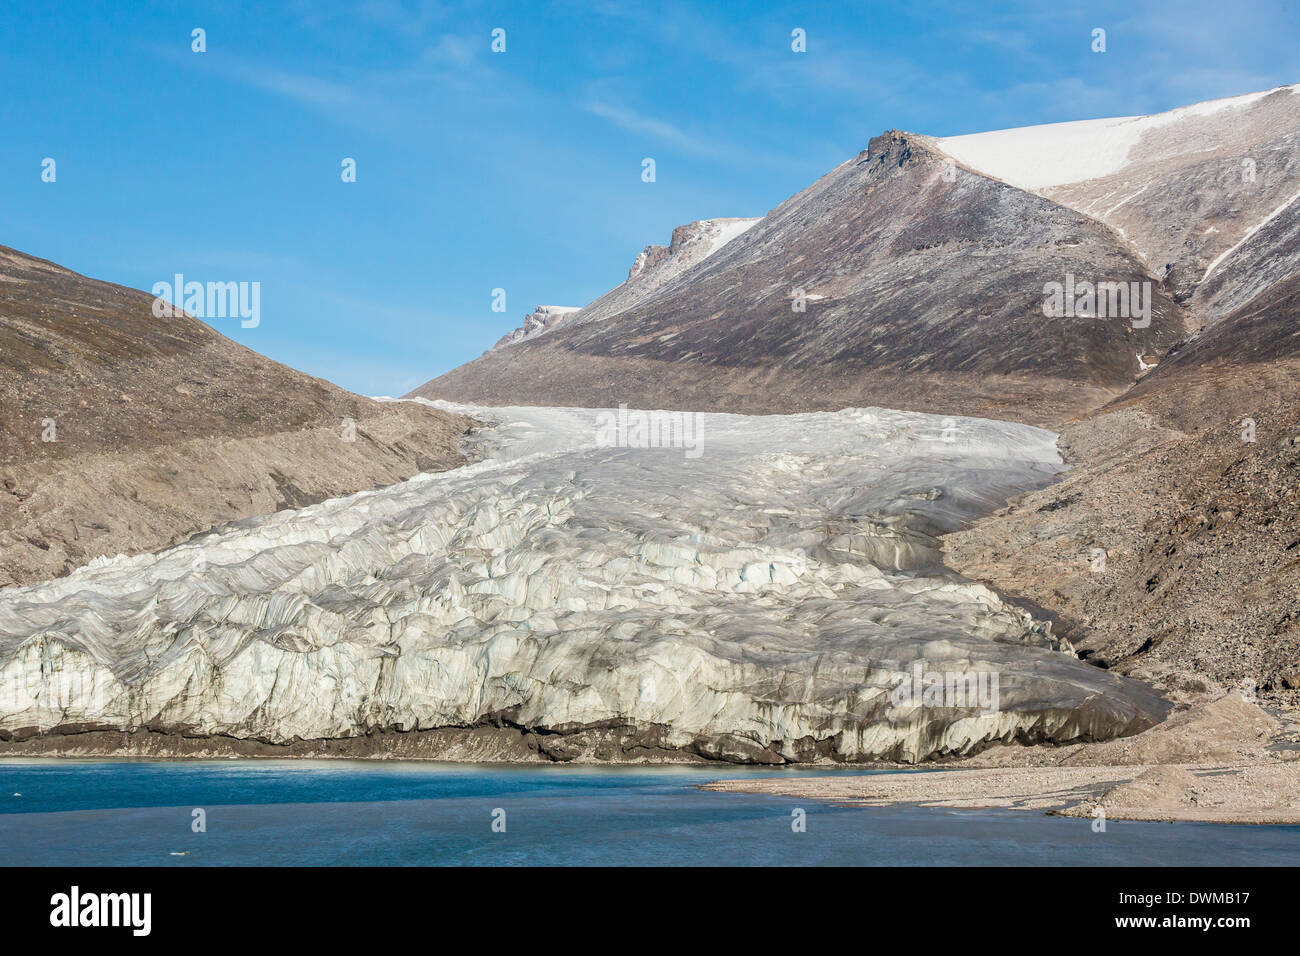 Les sommets enneigés et les glaciers en bras glacés, l'île de Baffin, Nunavut, Canada, Amérique du Nord Banque D'Images